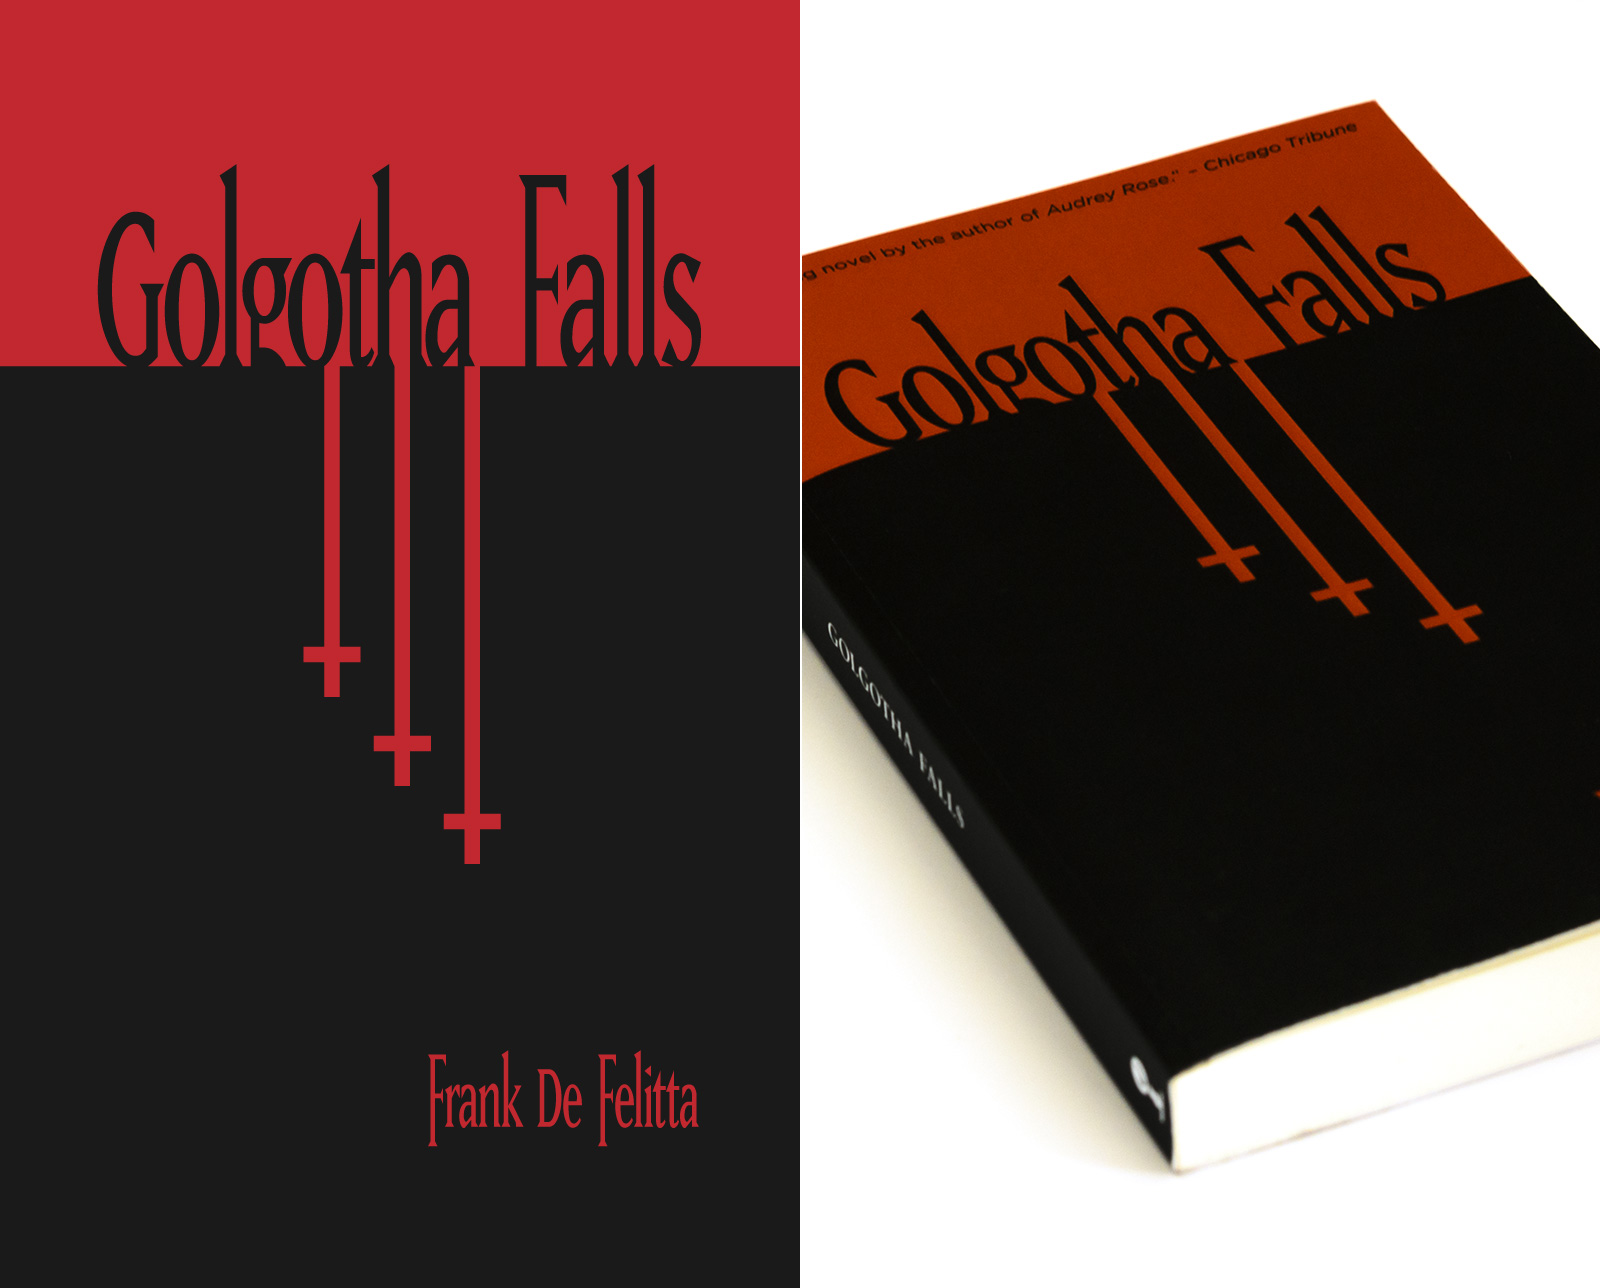 Golgotha Falls by Frank De Filitta